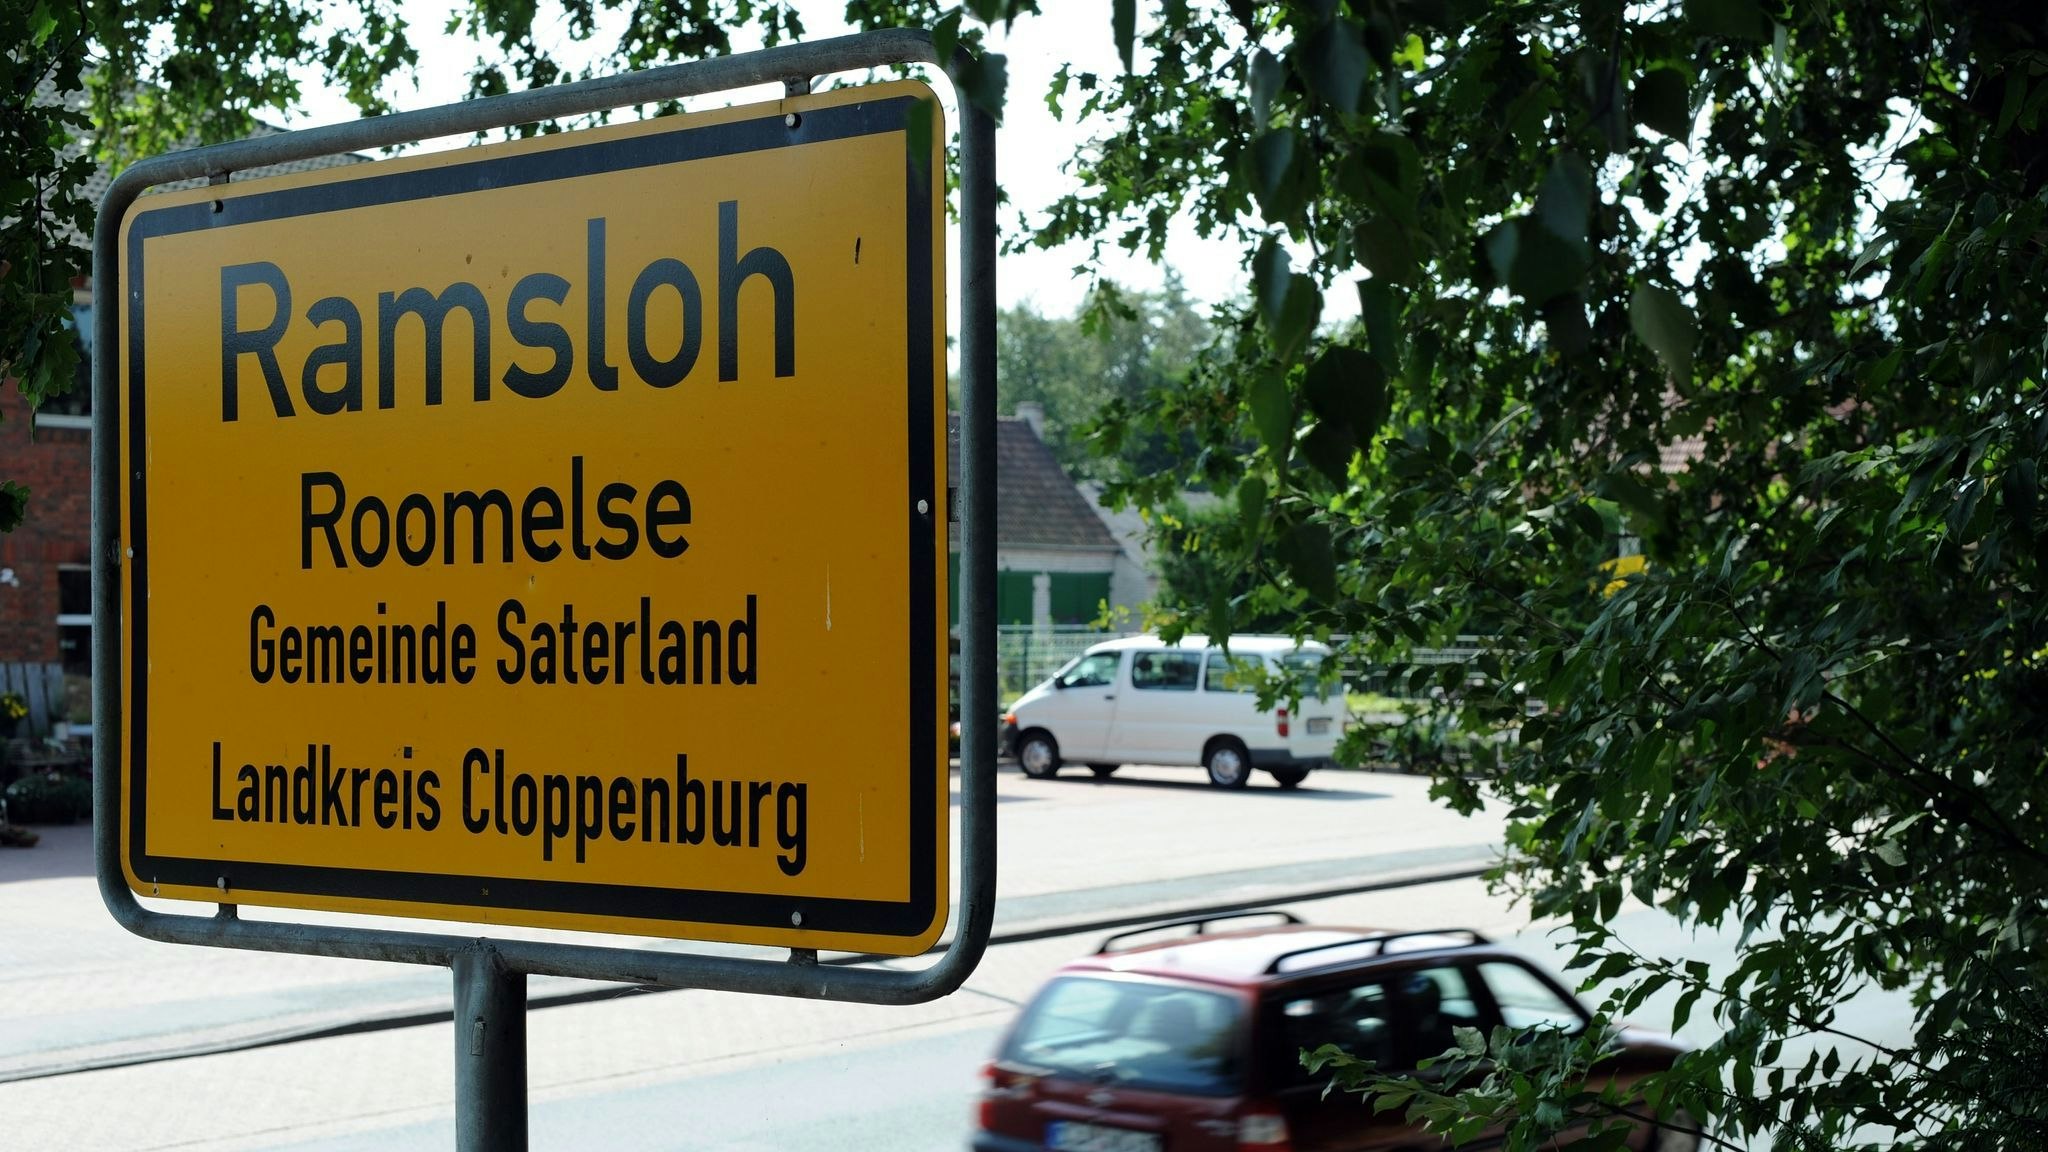 Das Ortsschild ist mit "Ramsloh" und der saterfriesischen Übersetzung "Roomelse" beschriftet. Foto: dpa/Wagner